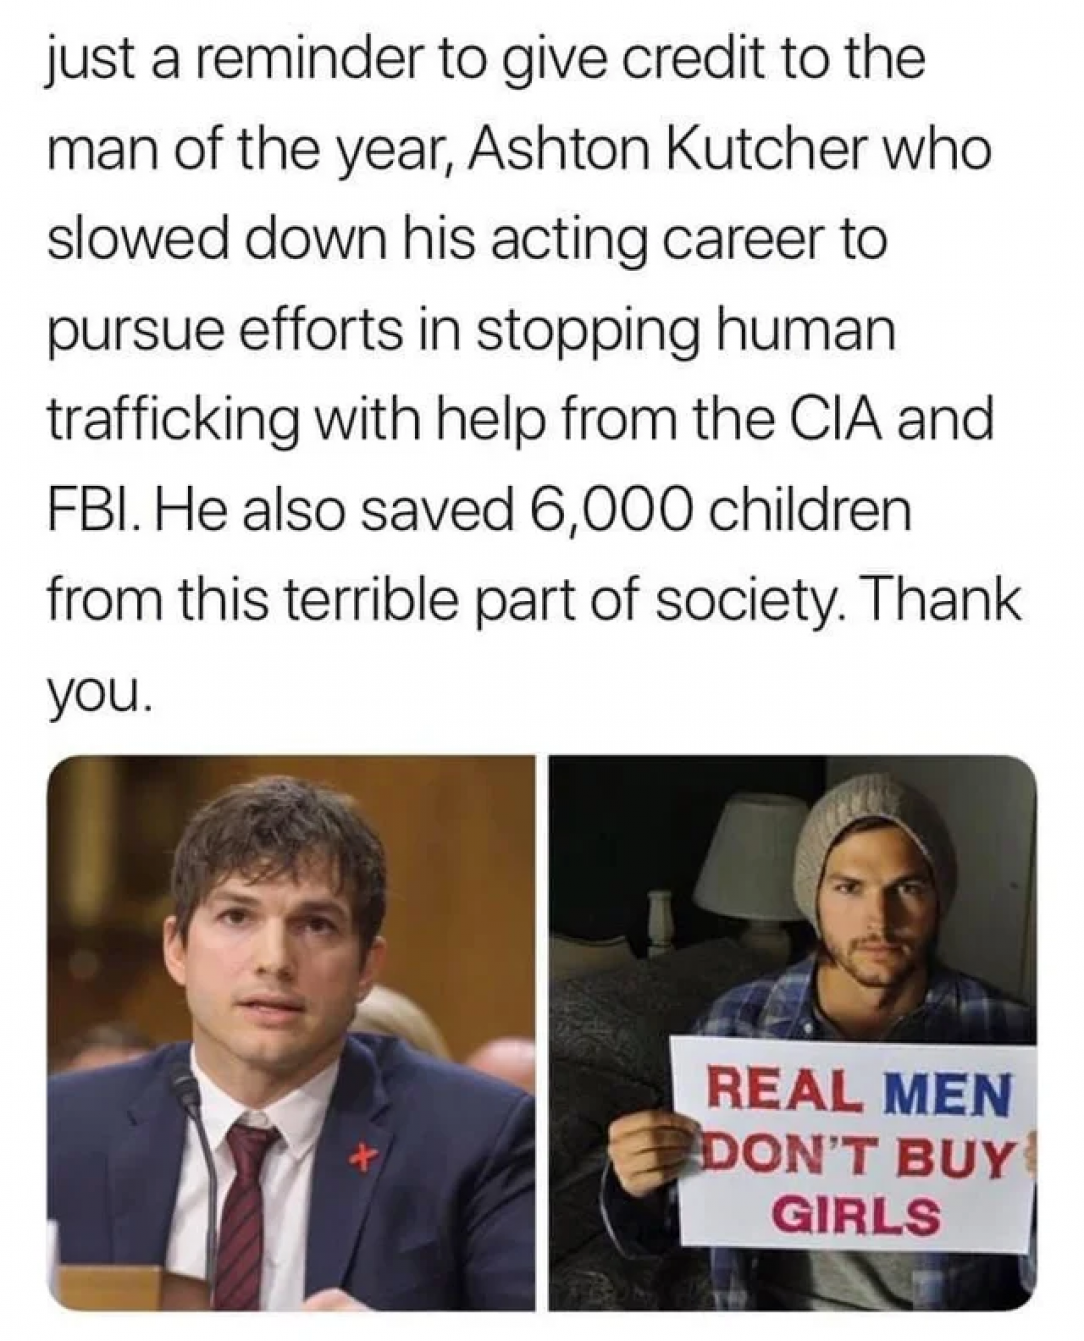 Ashton Kutcher a hero